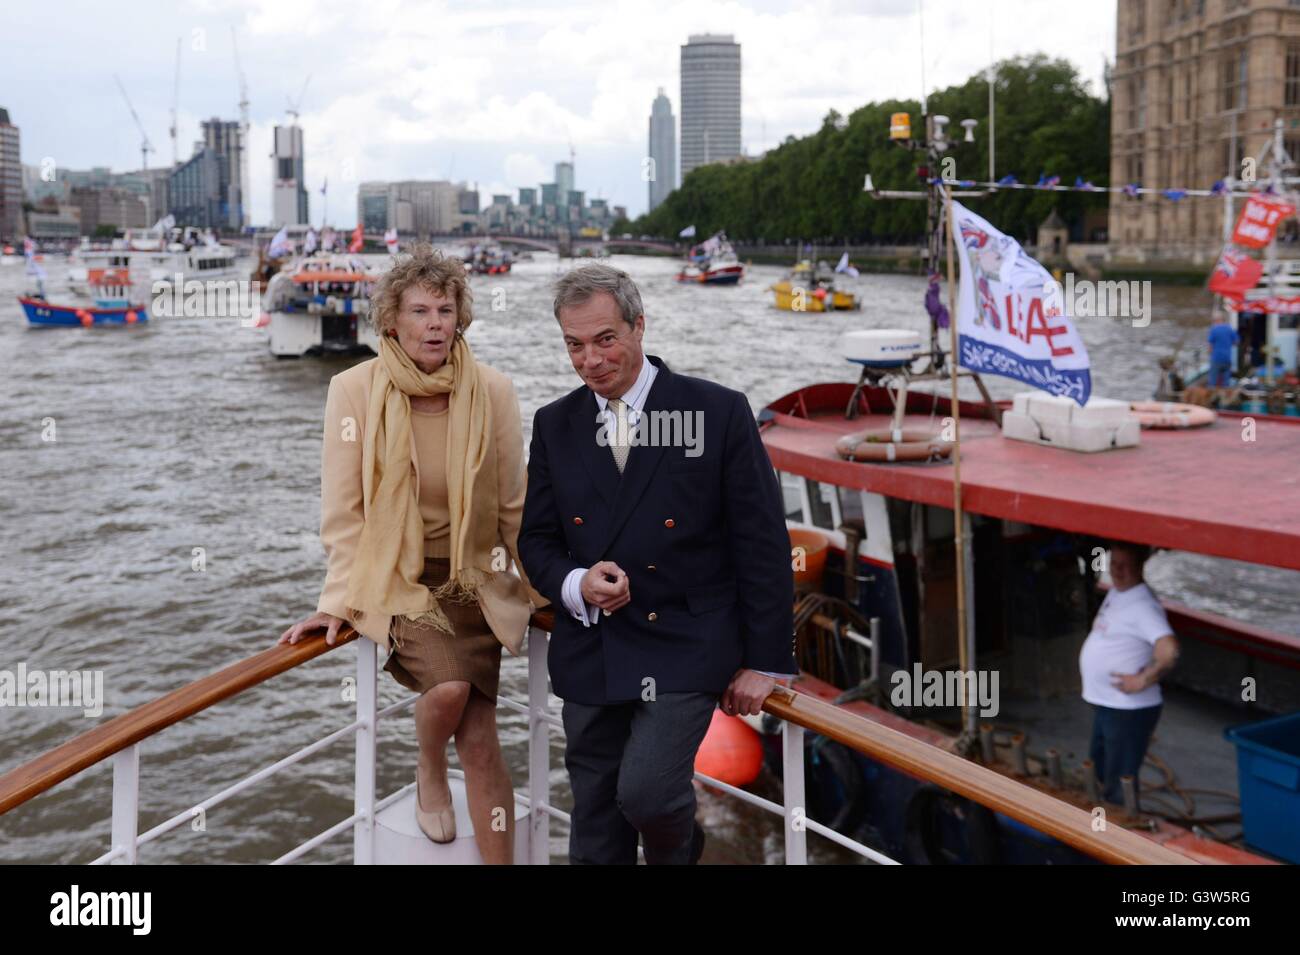 Die UKIP Führer Nigel Farage und Kate Hoey an Bord eines Bootes, die Teilnahme an einer Fischerei für Pro-Austritt "Flottille" auf der Themse, London verlassen. Stockfoto